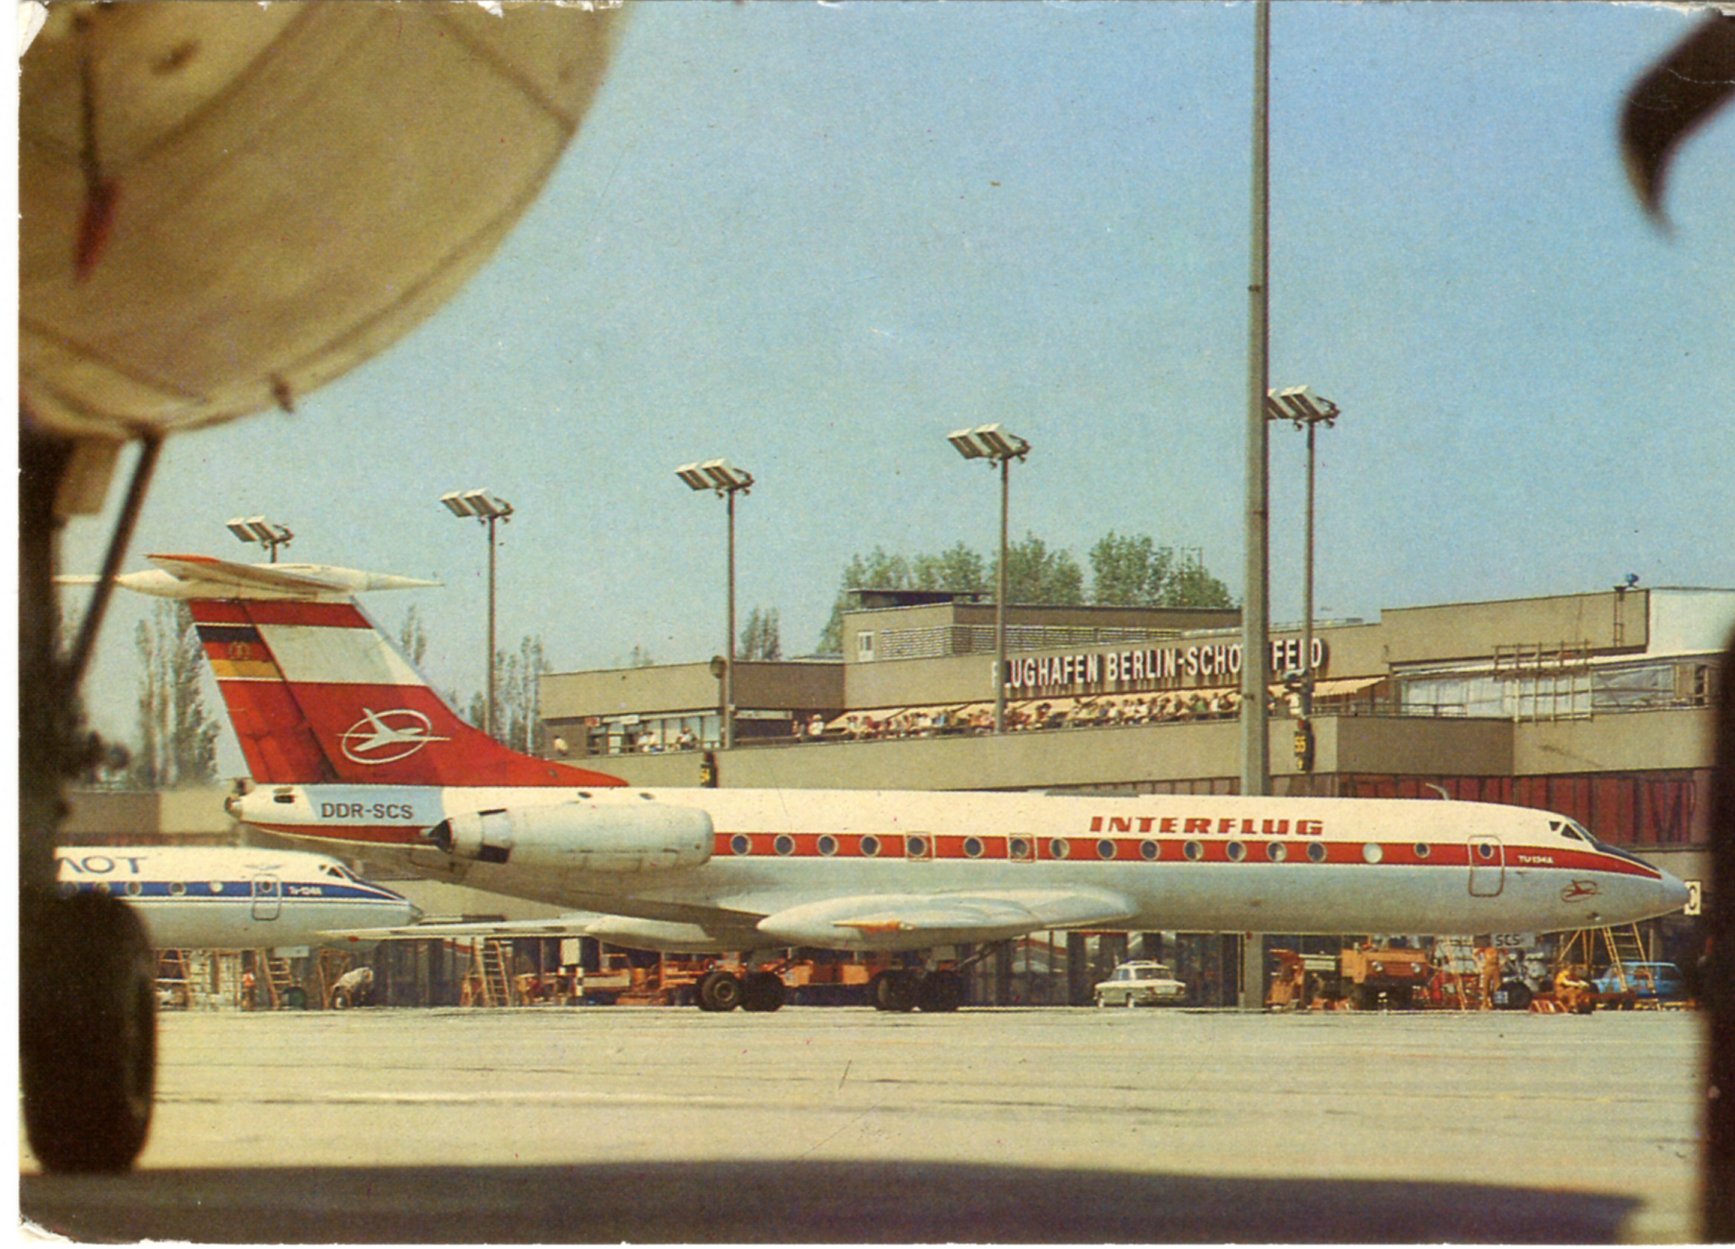 Flughafen Berlin Schönefeld mit DDR-SCS Tu134a und einer Aeroflot Maschine